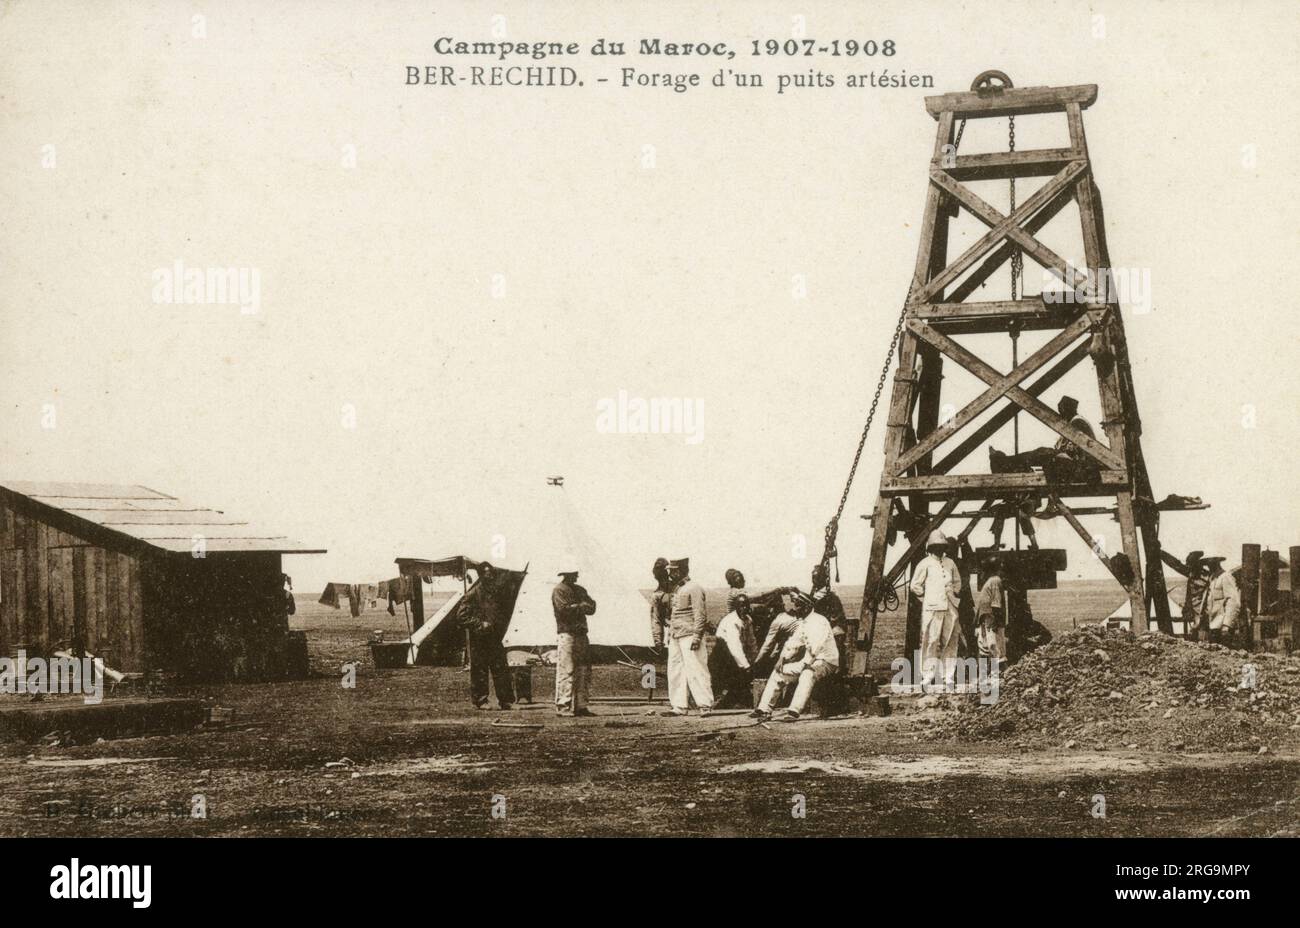 Bohren einer artesischen Bohrgrube in Berrechid während der französischen Kampagne in Marokko (1907-1908). Die französische Eroberung Marokkos („Invasion von Marokko“, „Marokko-Kampagne“ oder „Befriedung Marokkos“) begann 1907 und dauerte bis 1934 an. Stockfoto